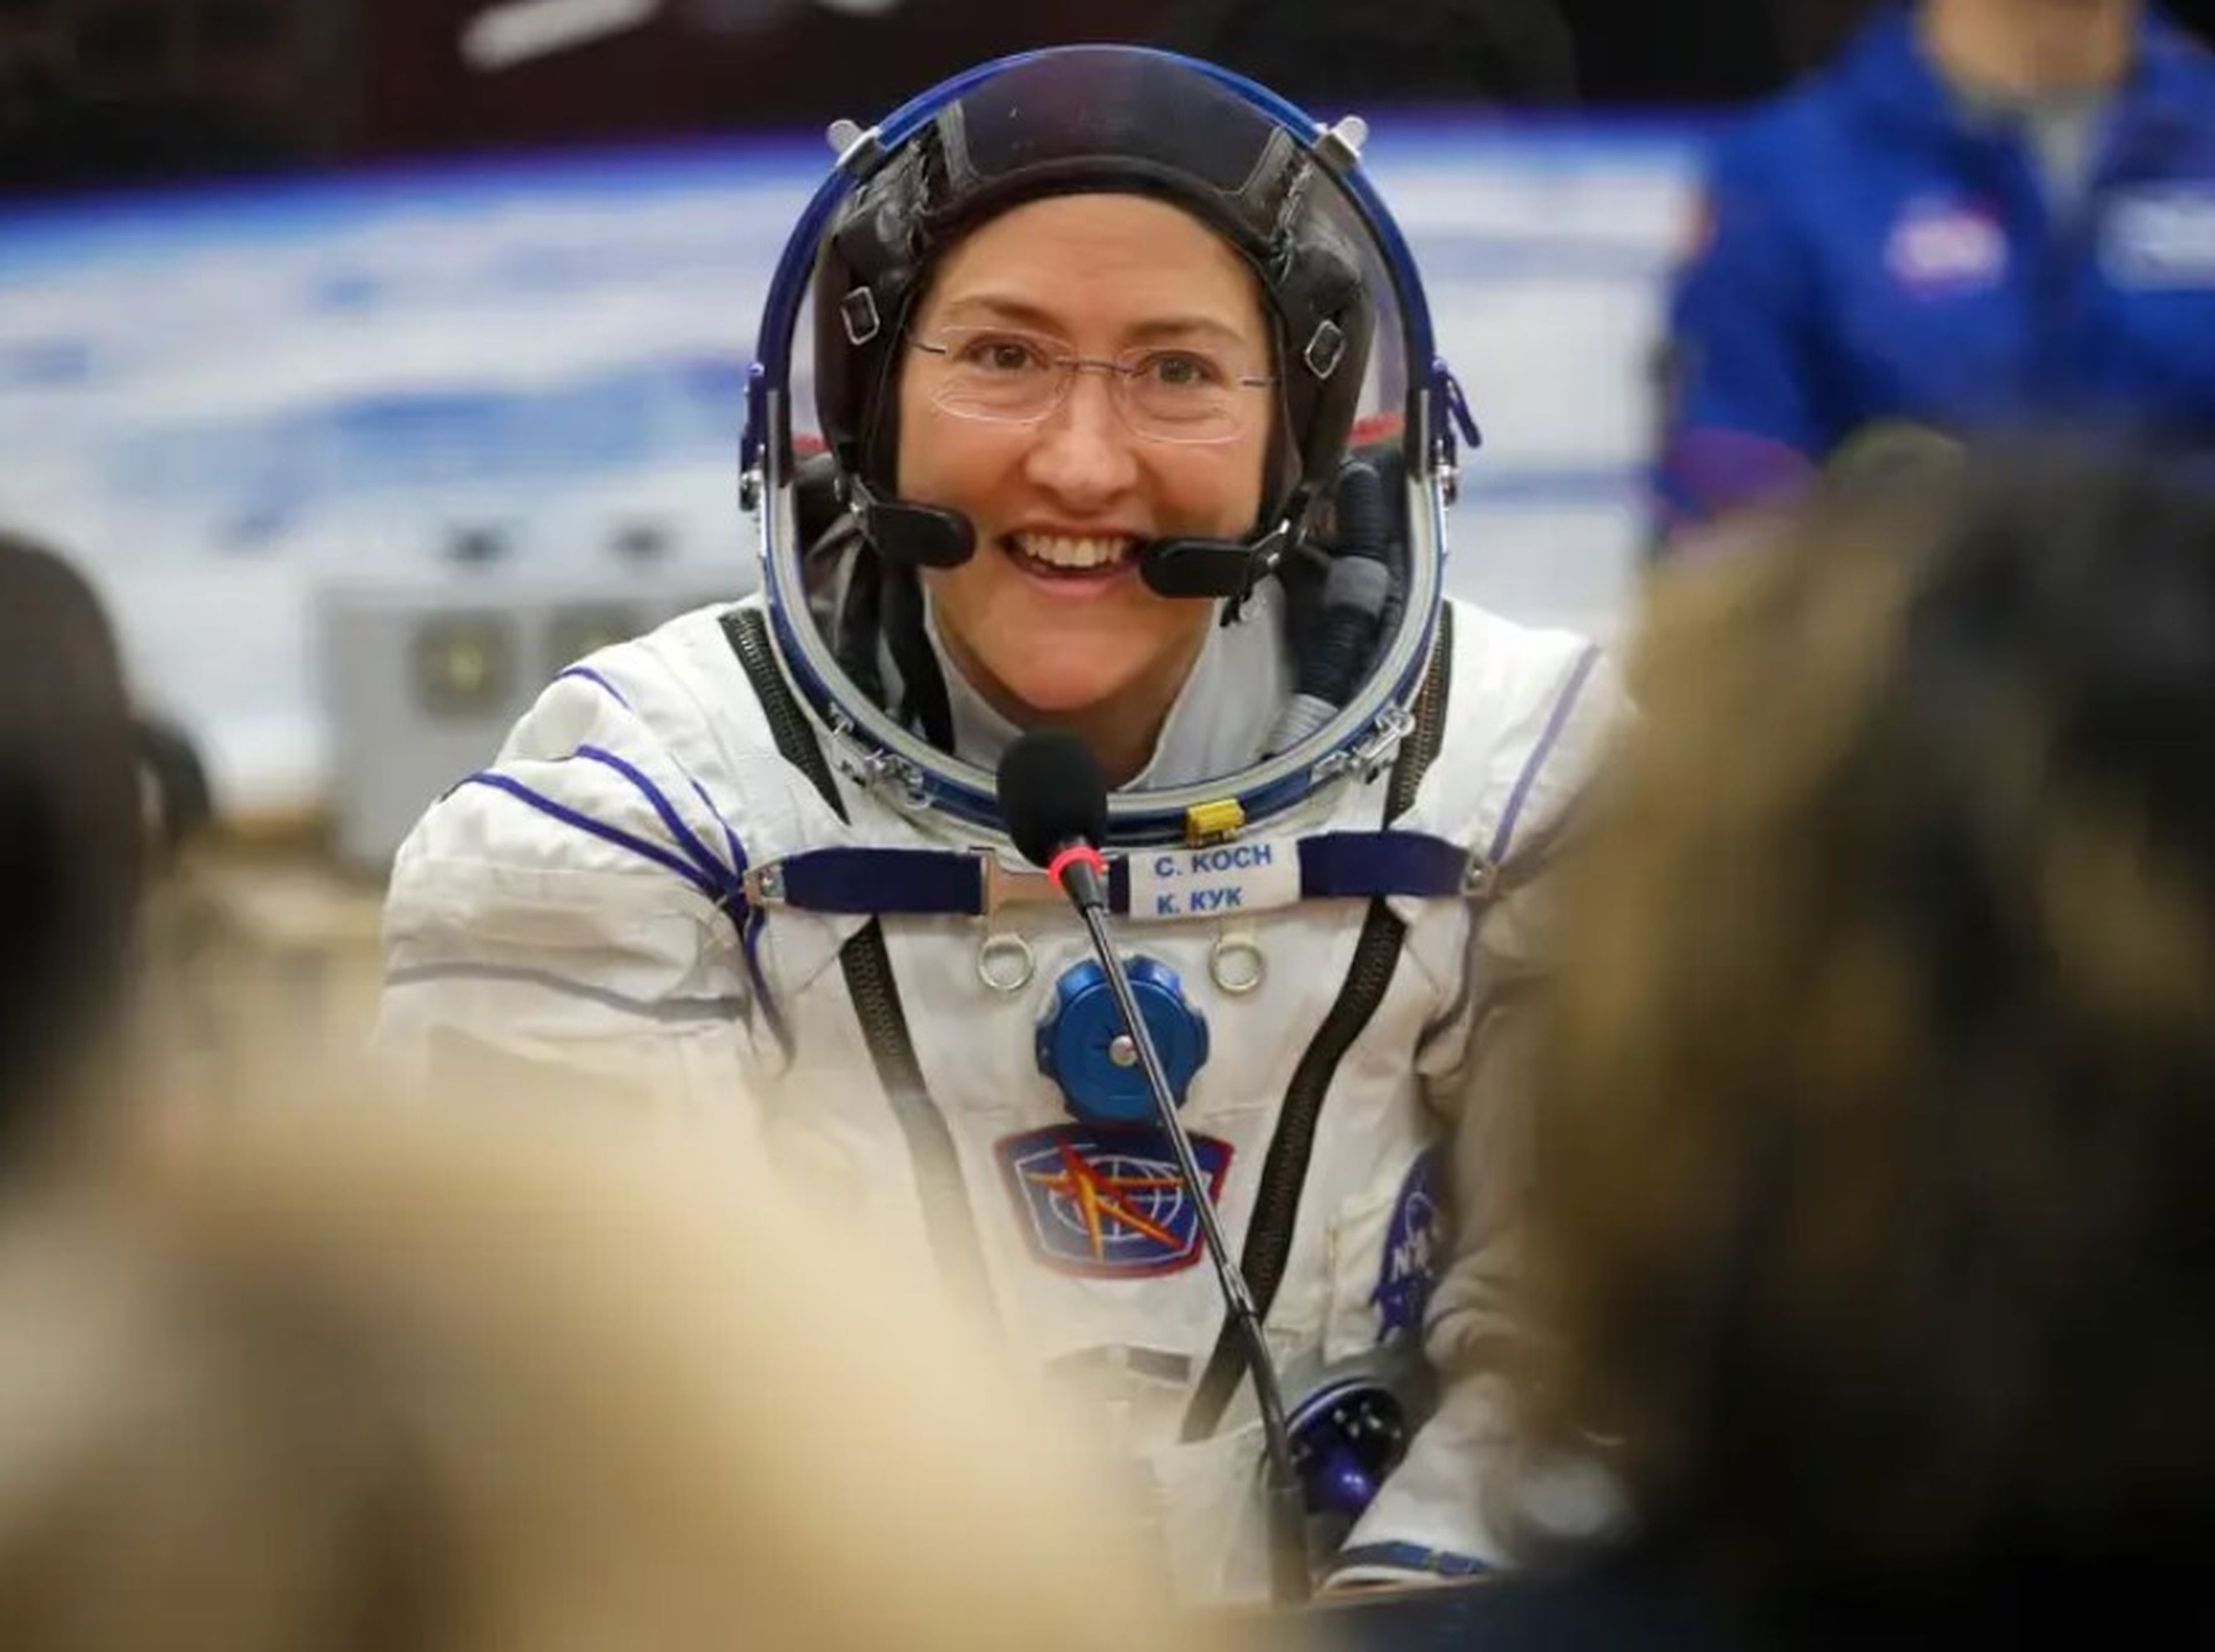 La astronauta Christina Koch, que volvió de la Estación Espacial el 6 de febrero de 2020, fotografiada el 14 de marzo de 2019.